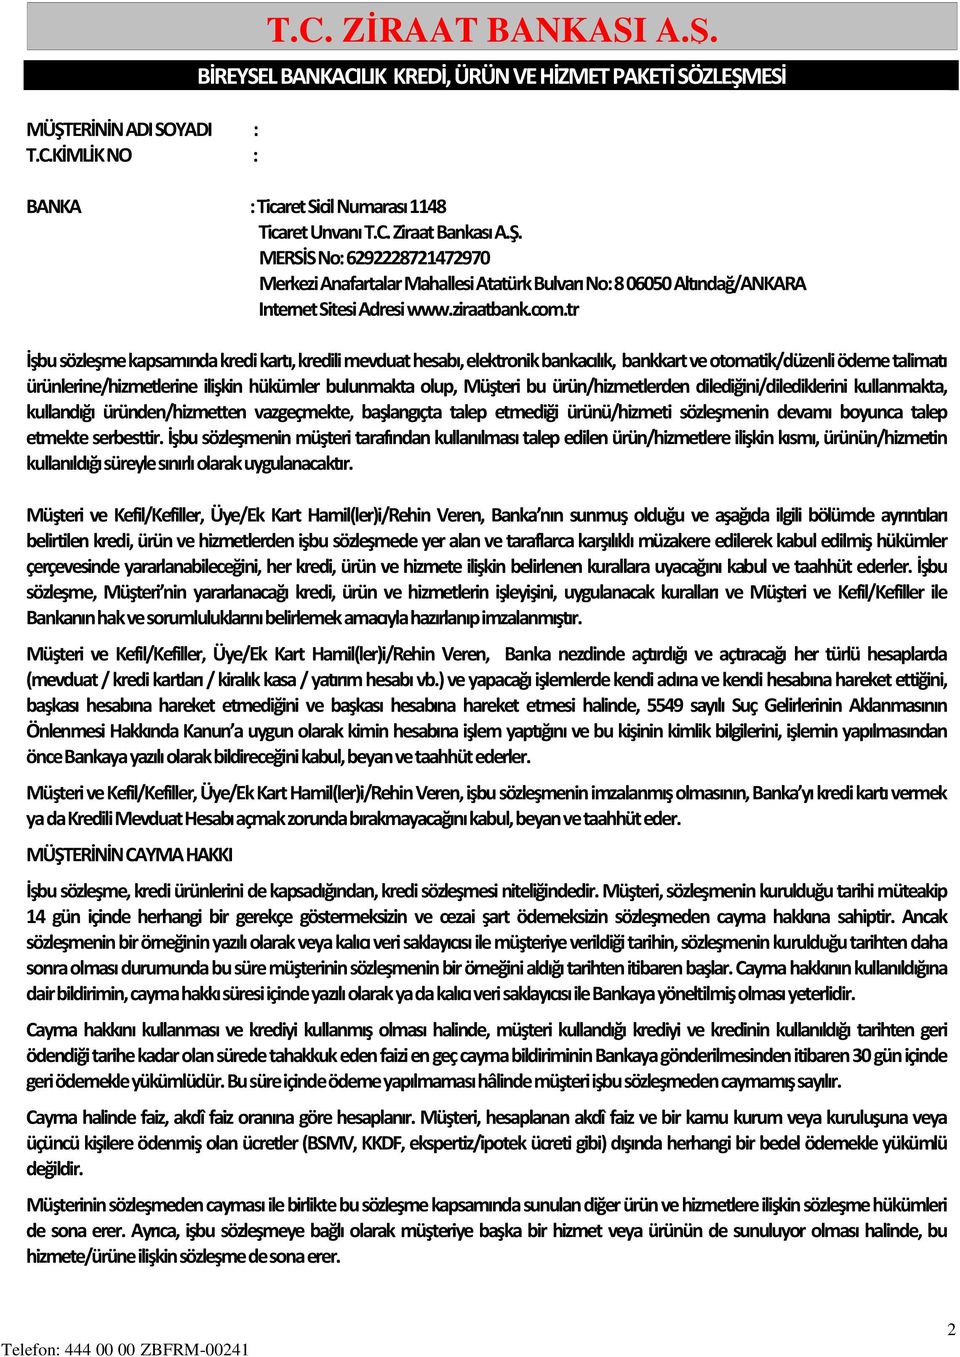 T.C. ZİRAAT BANKASI A.Ş. - PDF Free Download